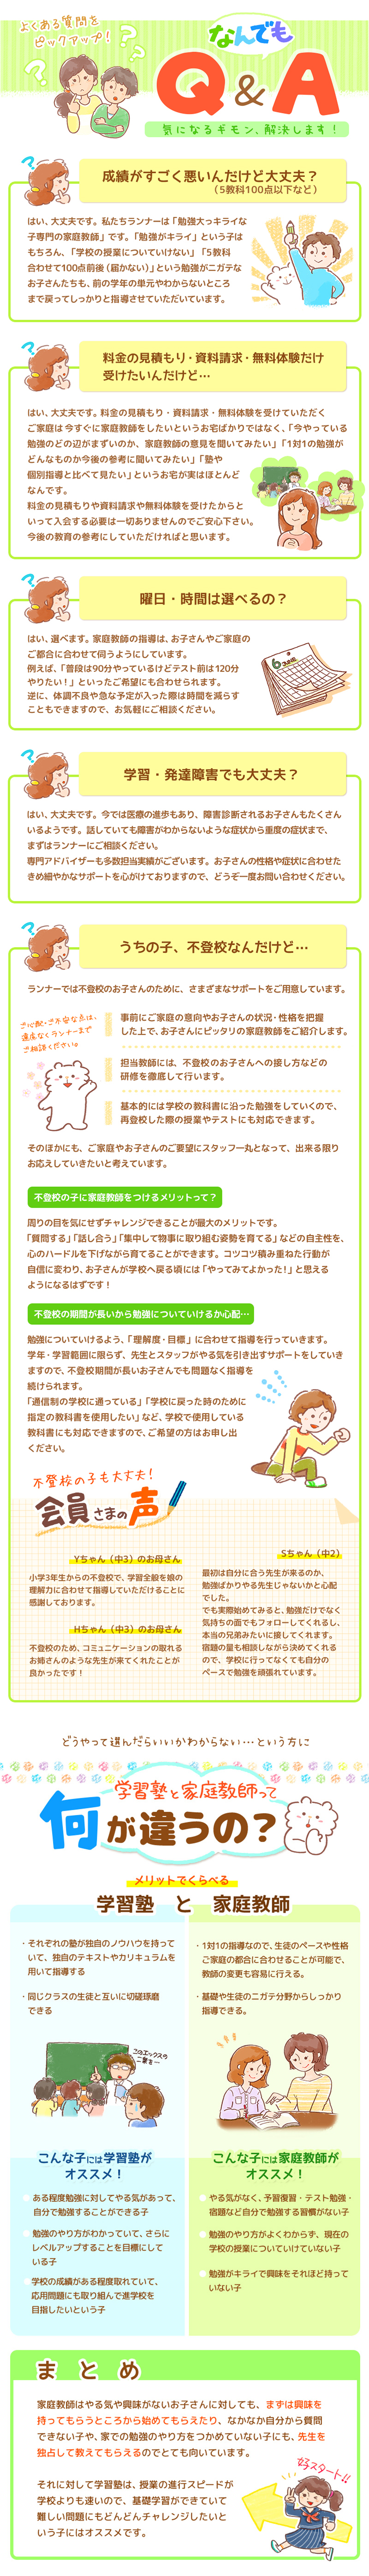 【家庭教師-熊本県-中央区のお客様のページ】【画像が表示されない場合はページ下部に画像と同じ内容をテキストで掲載していますのでそちらをご覧ください。】